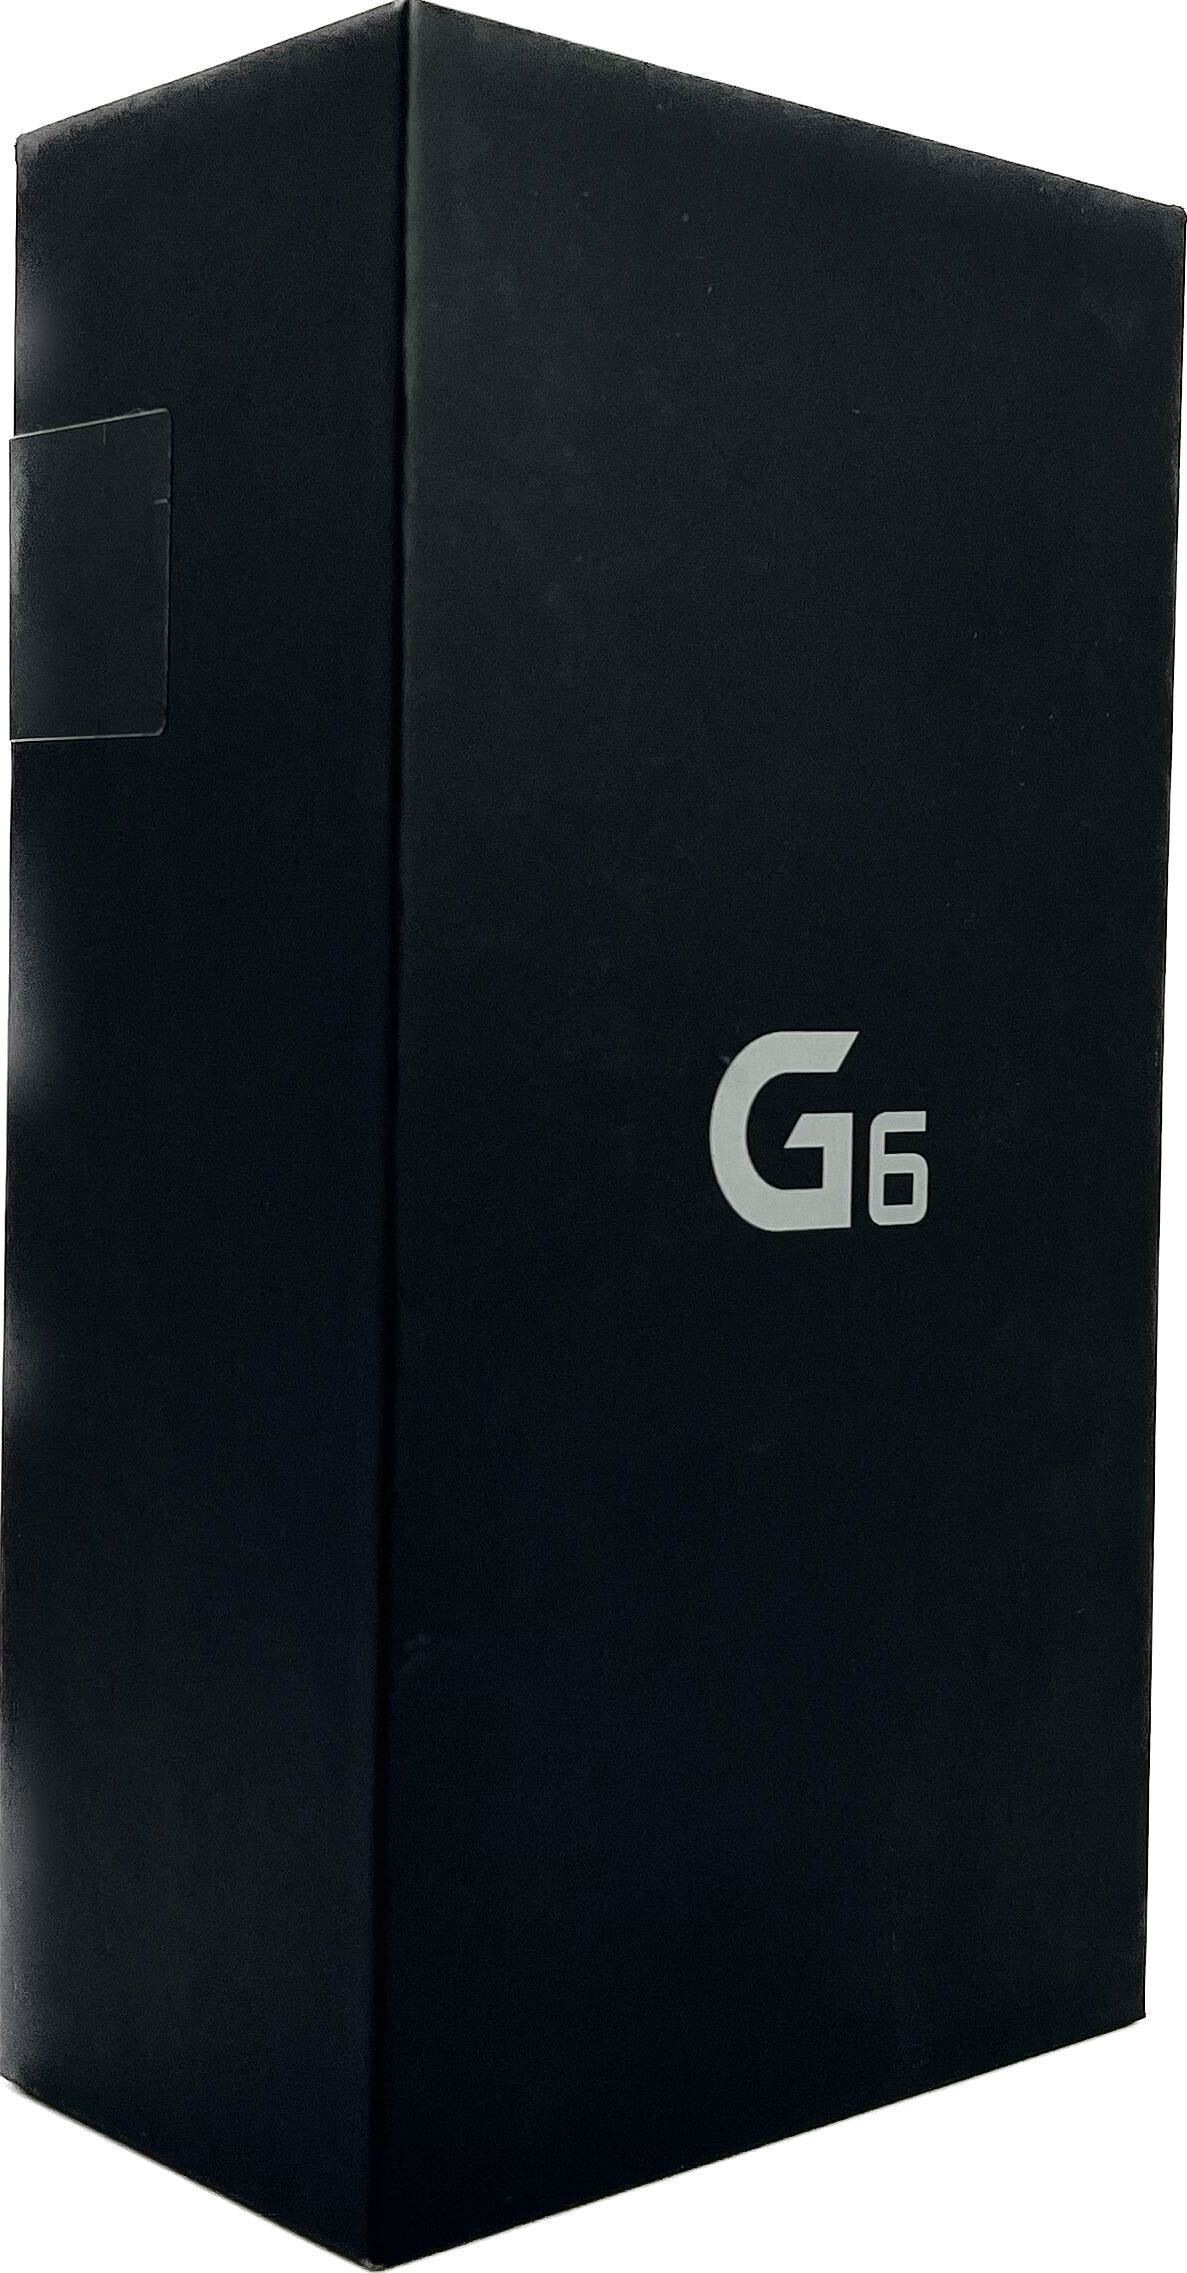 LG G6 (Unlocked)